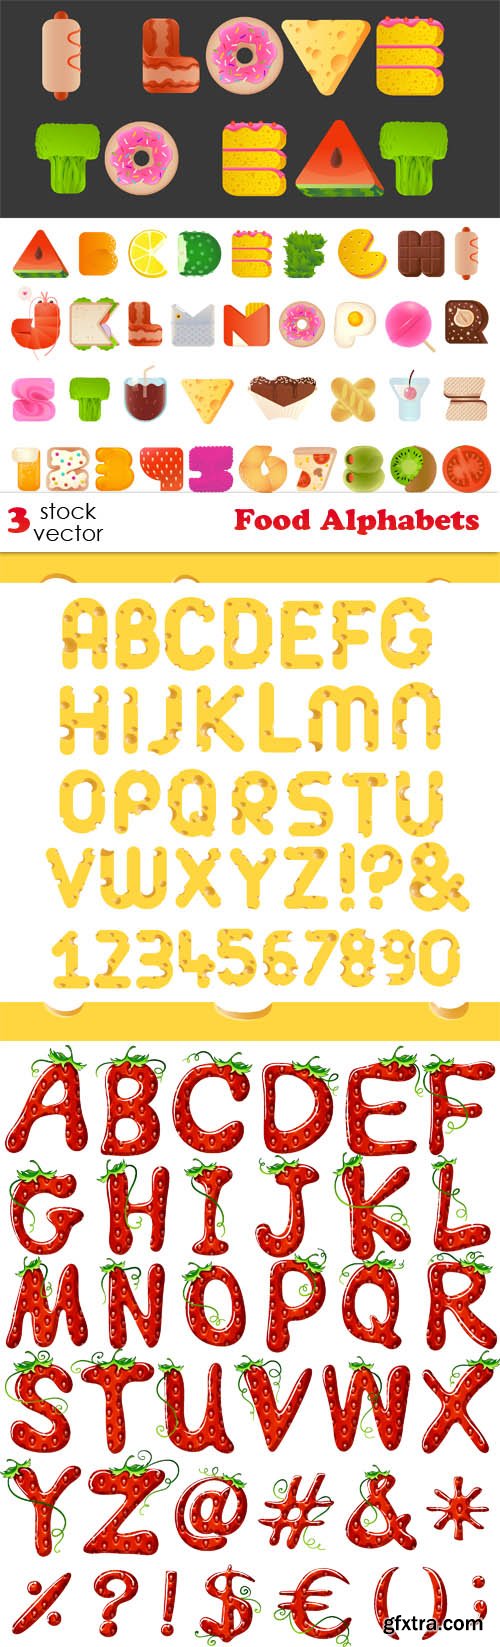 Vectors - Food Alphabets